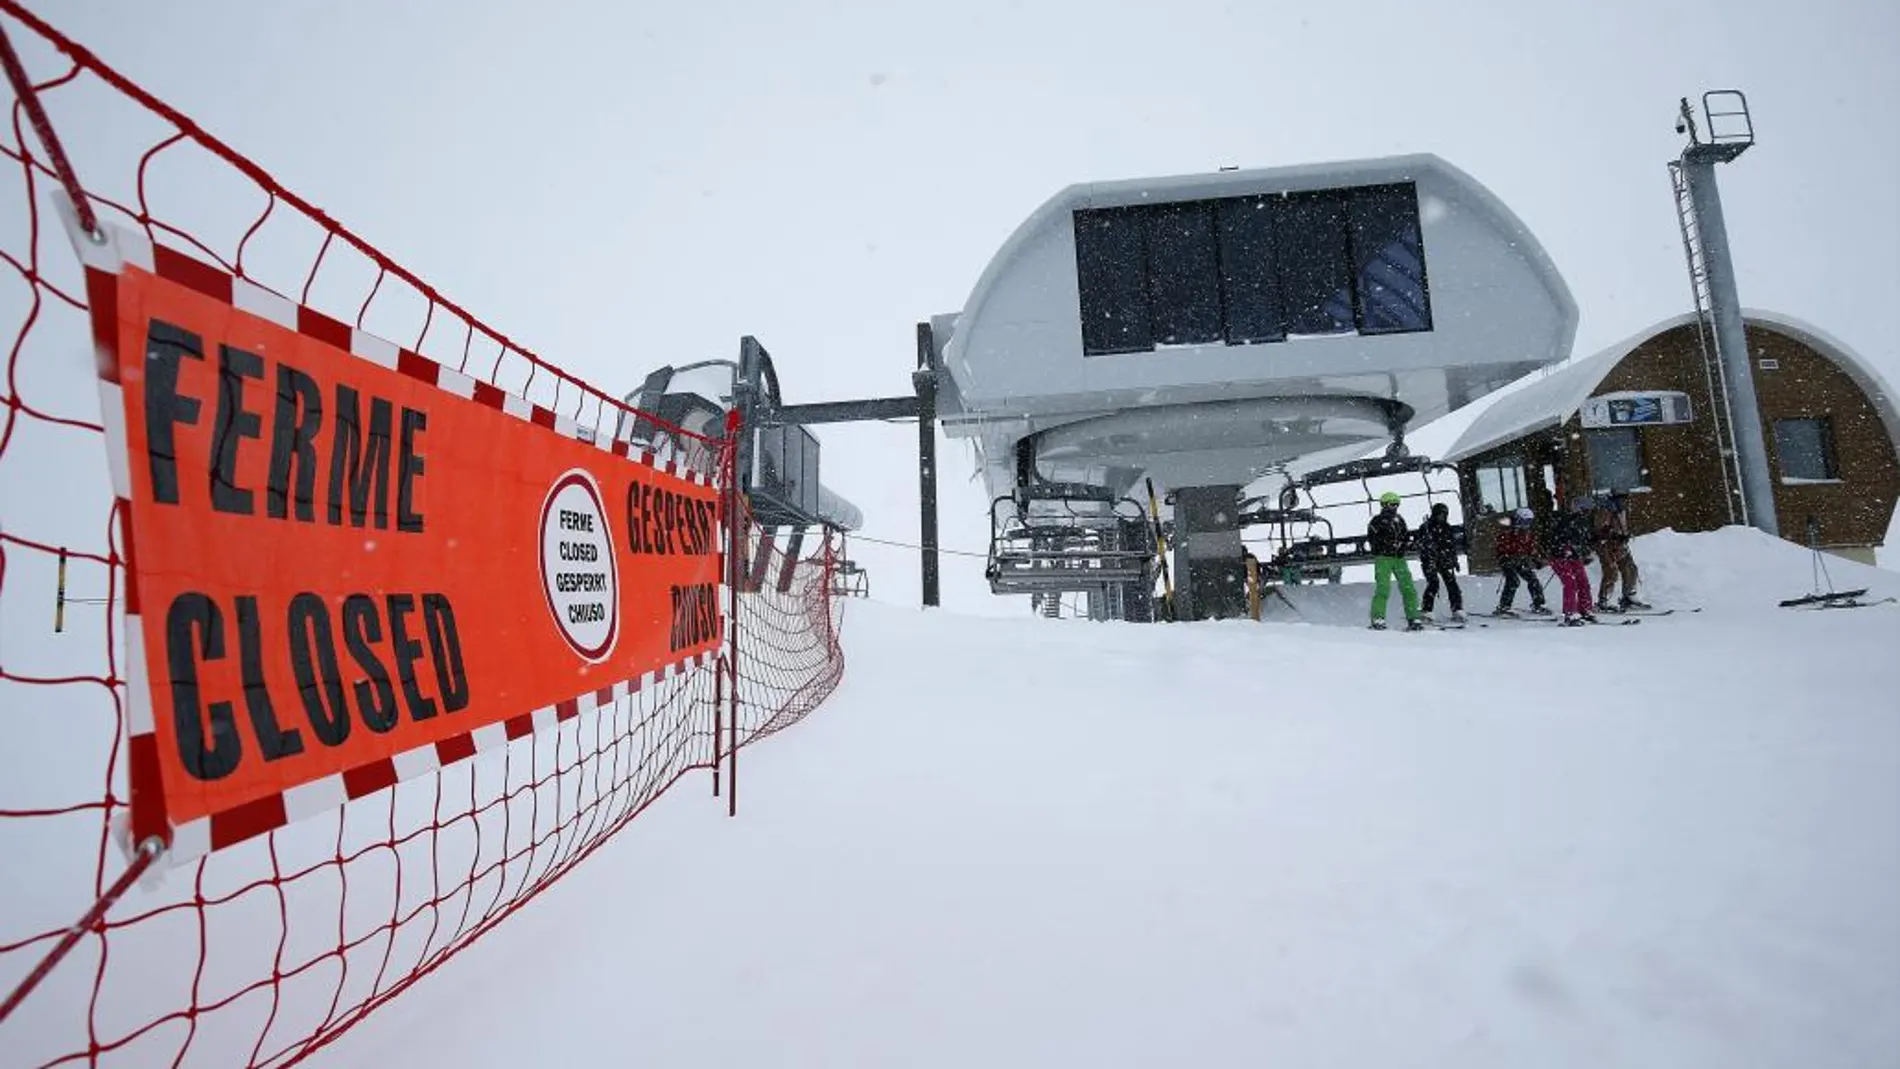 Una señal deniega el acceso a una de las pistas de la estación de esquí Deux Alpes en Francia